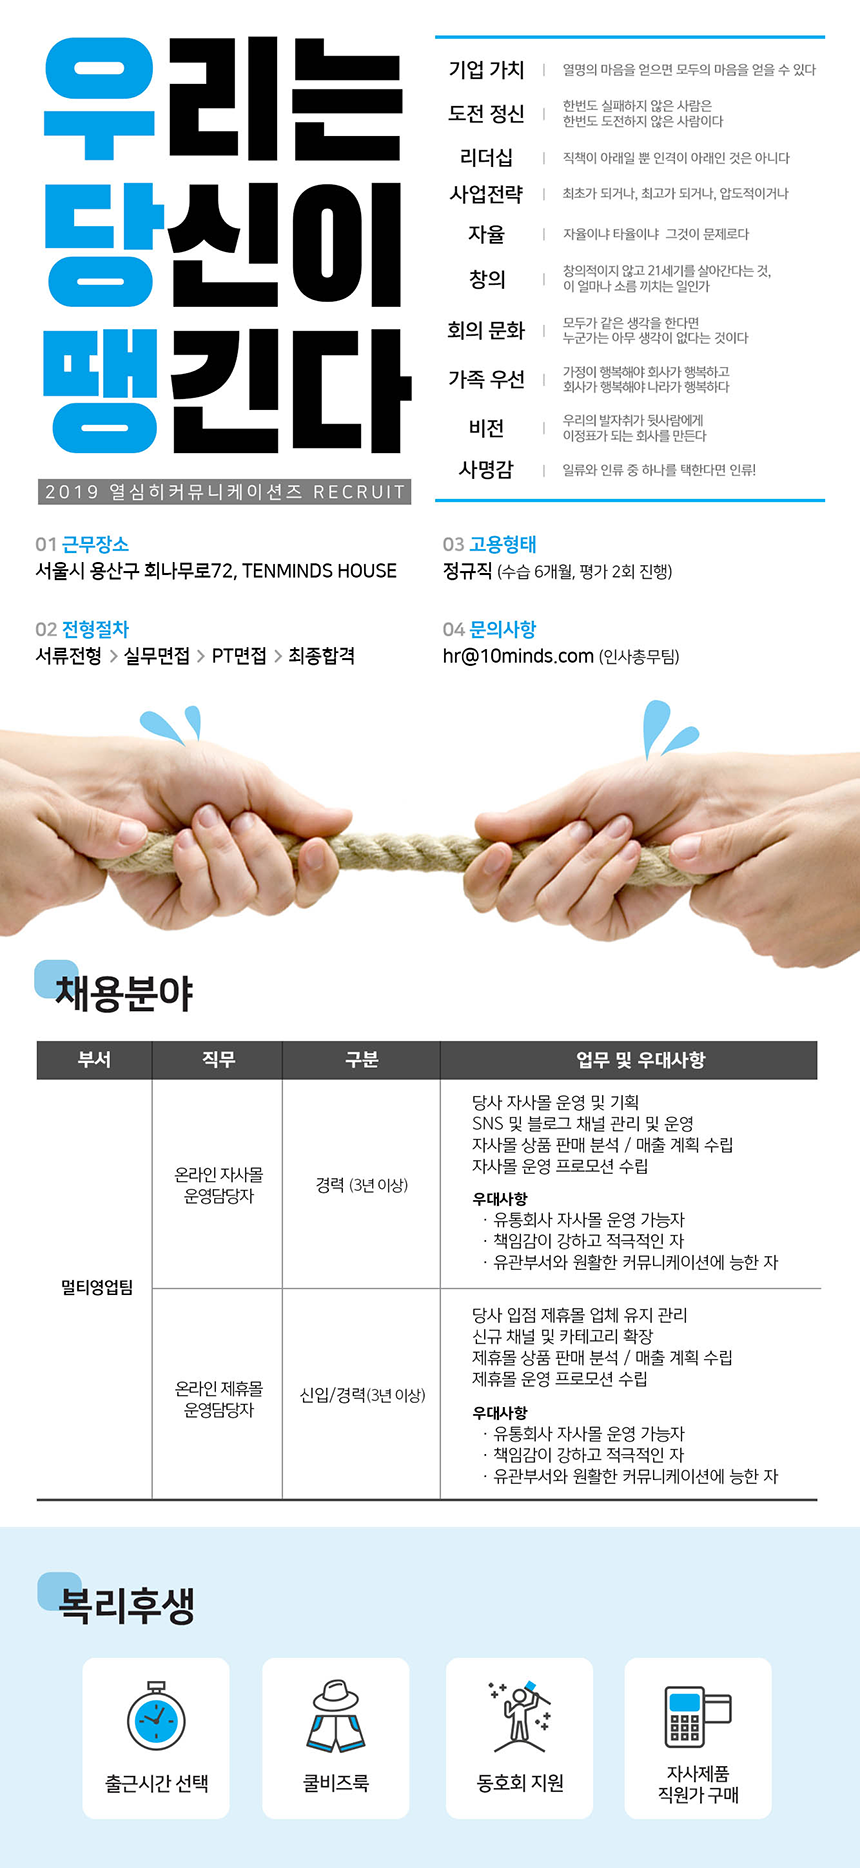 [텐마인즈]멀티영업팀 신입/경력 사원 채용